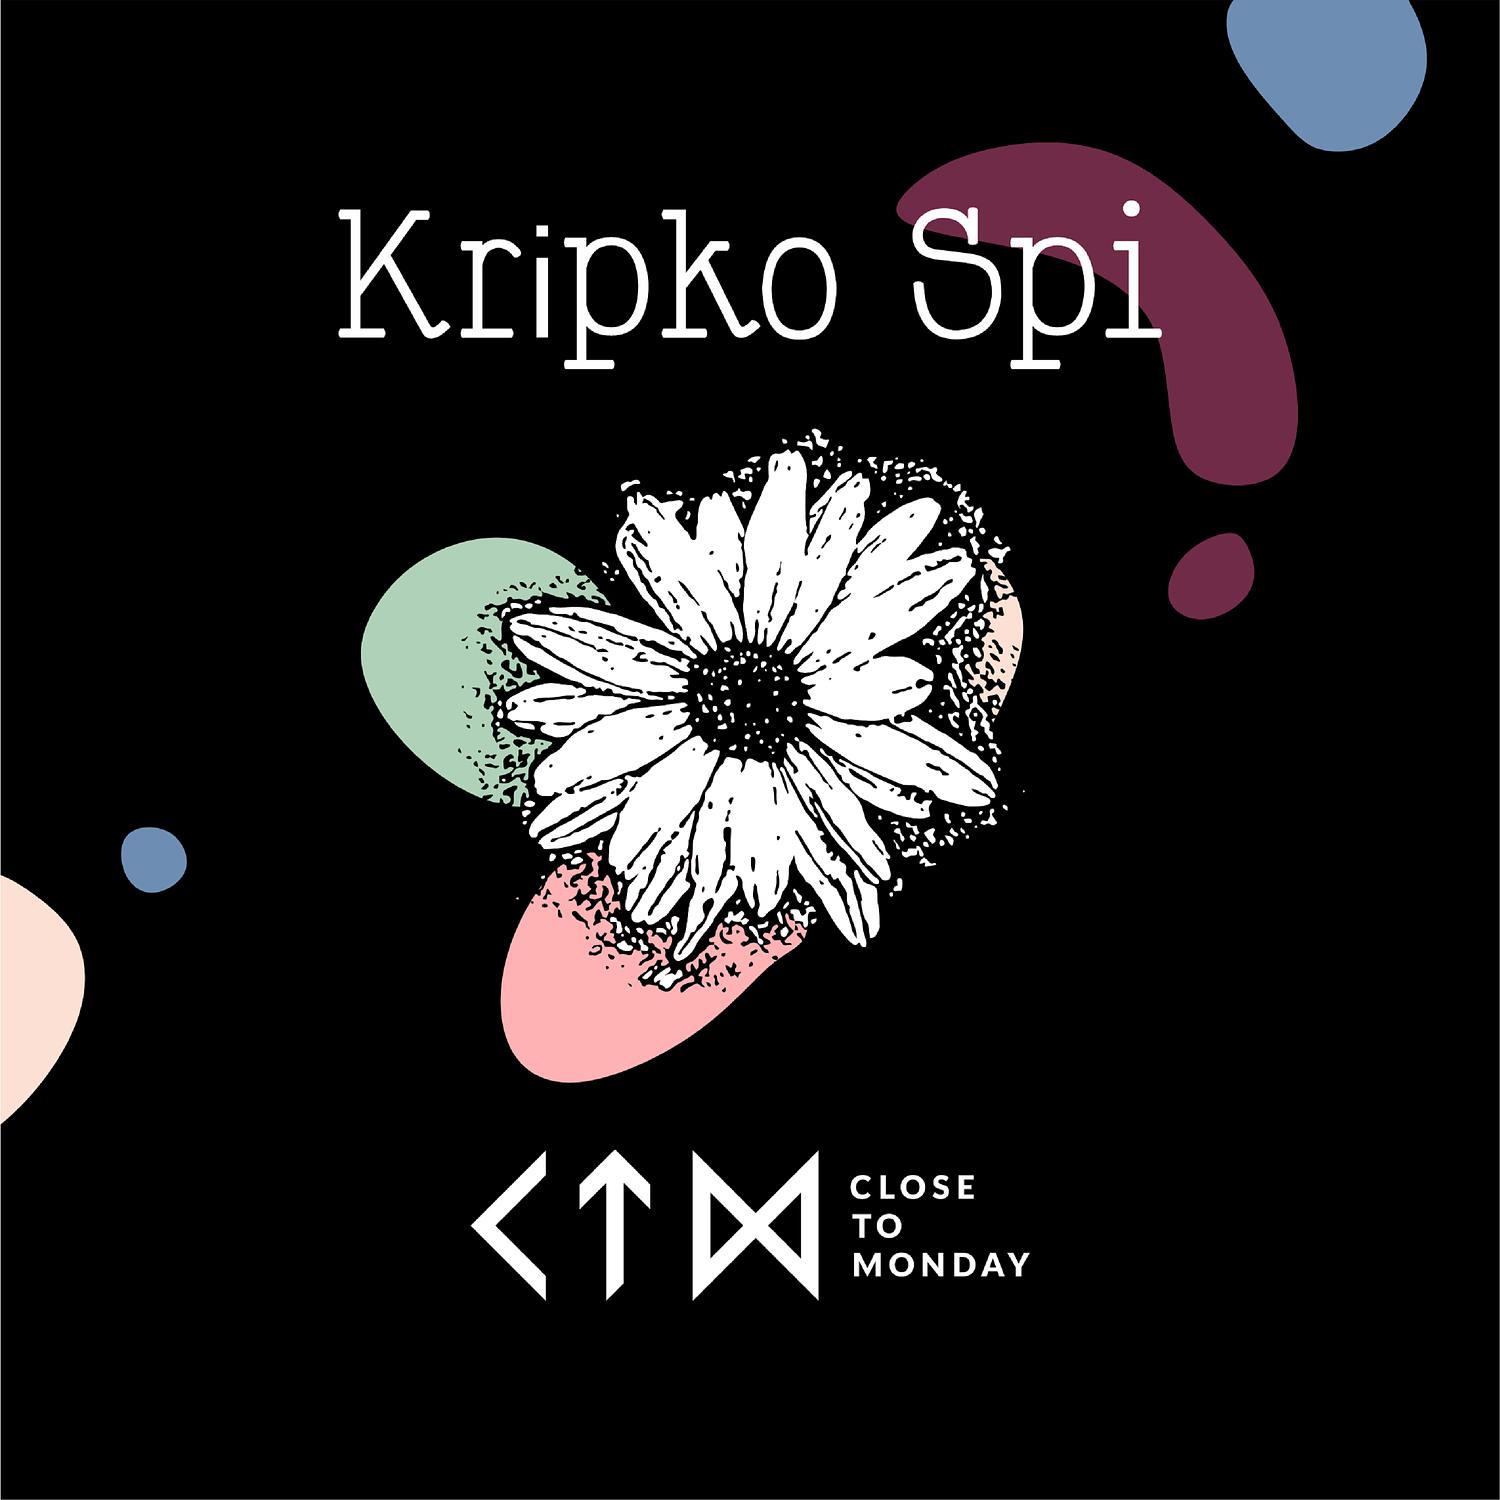 Close to Monday - Kripko Spi